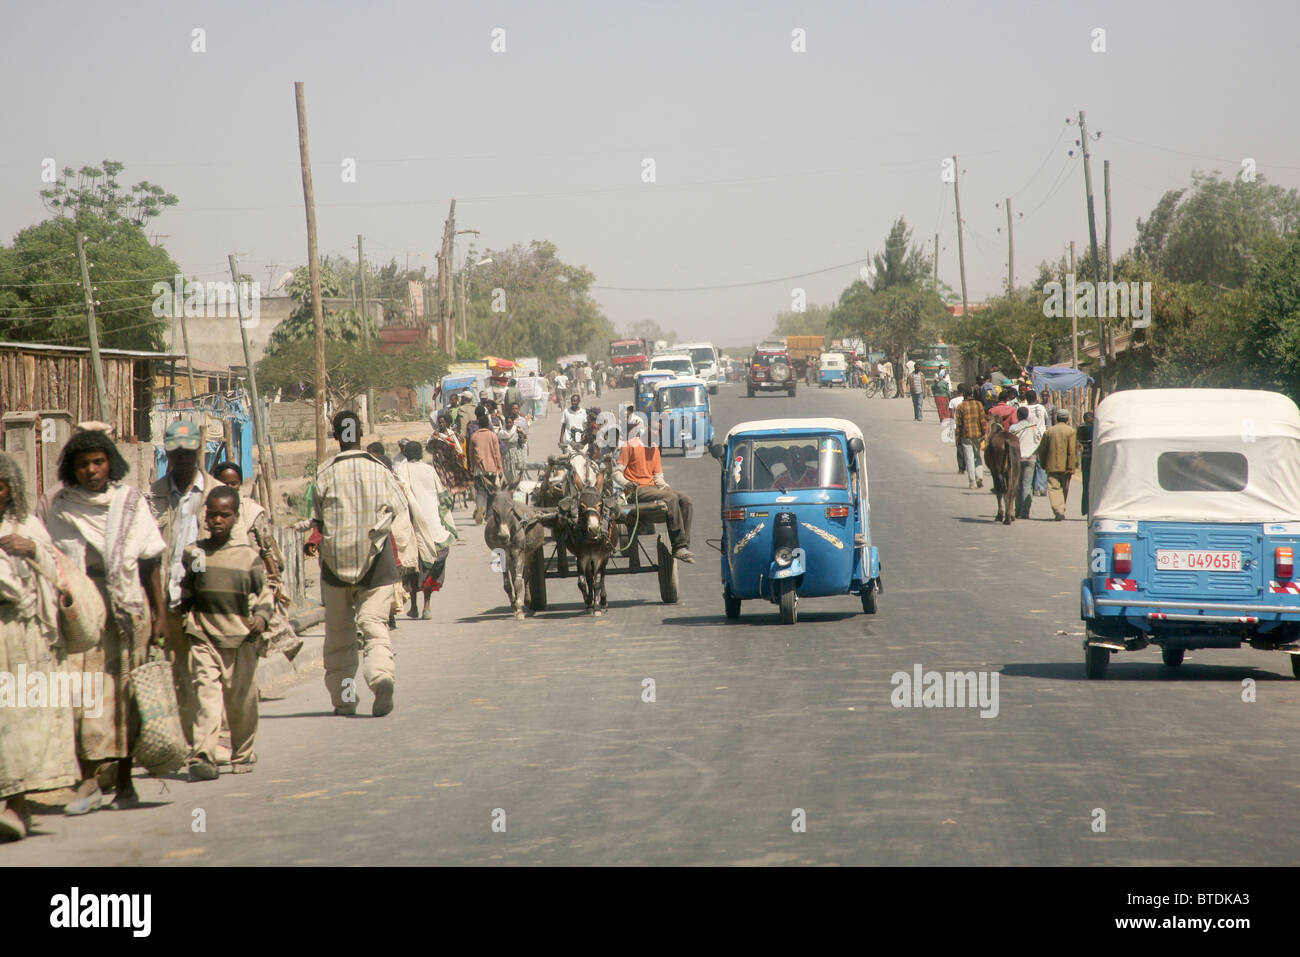 Le trafic de la rue encombrée de Bajaj, taxis, des ânes et des personnes Banque D'Images